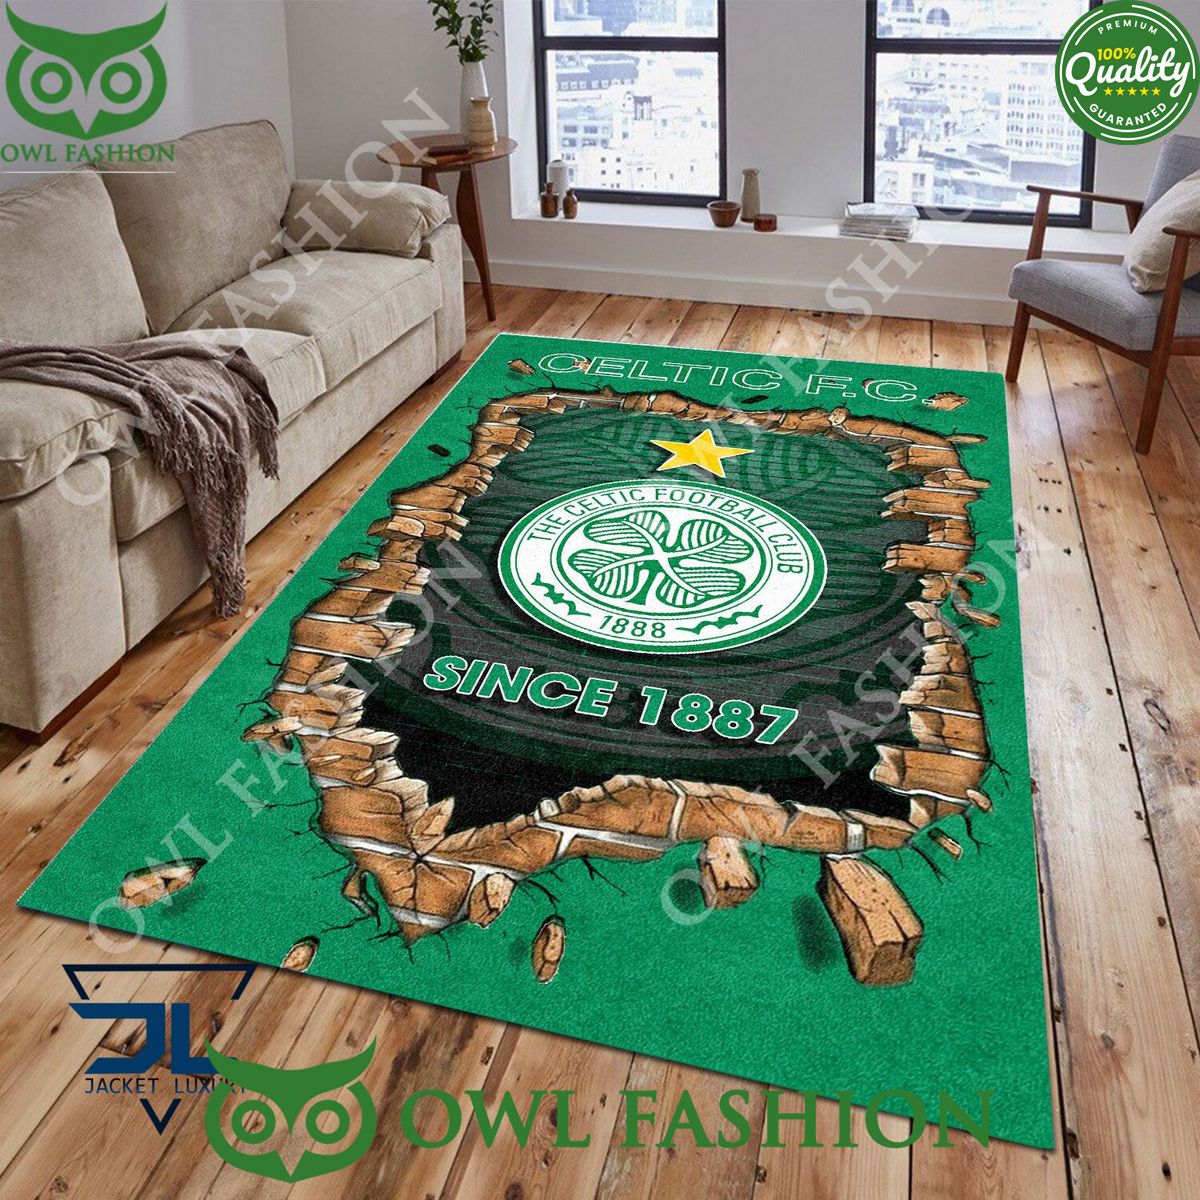 Celtic F.C. 1781 Scottish Broken Wall Living Room Carpet